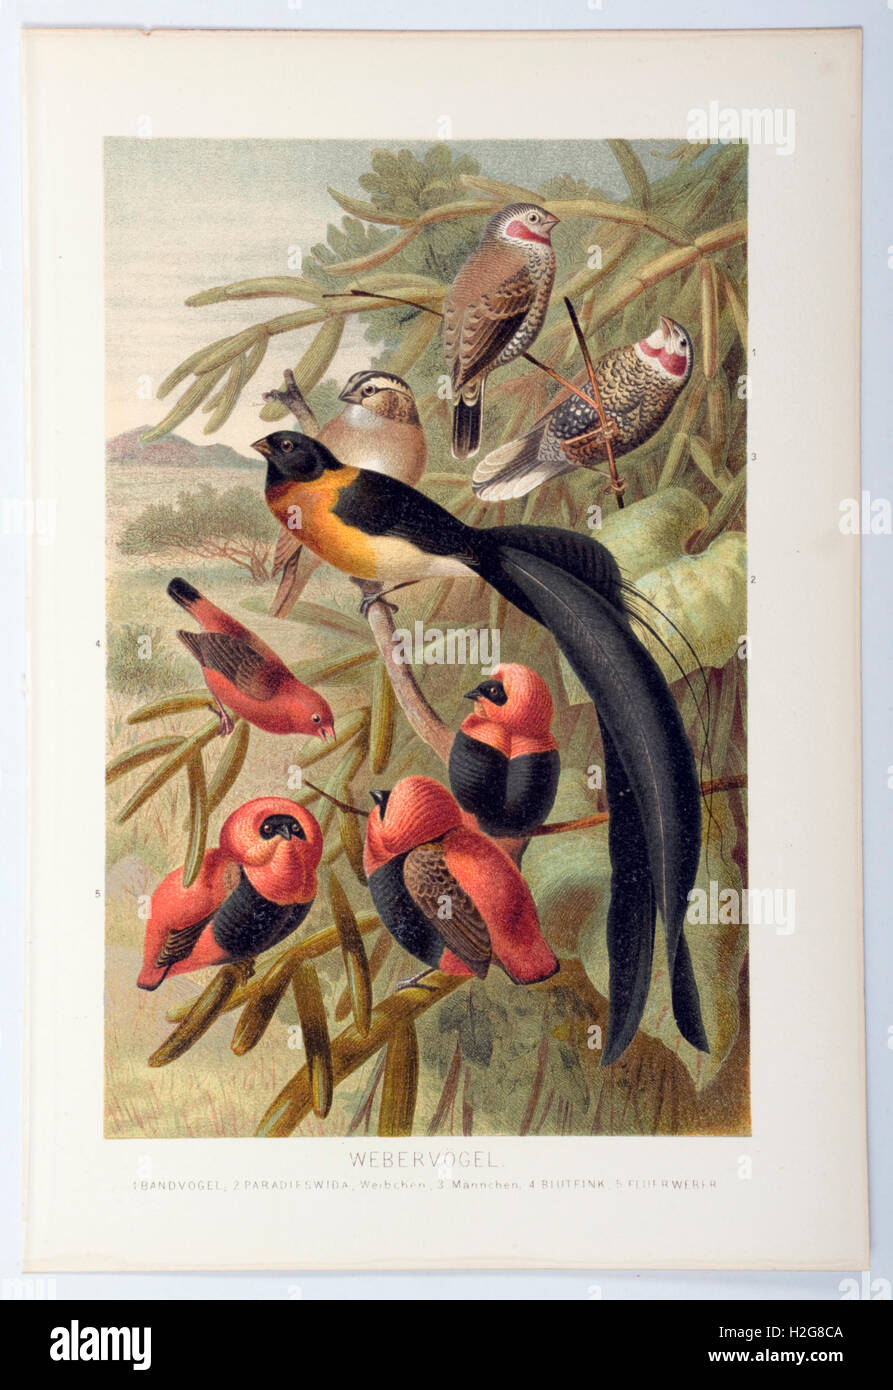 Weaver und Longtailed Paradies Weaver Platte von Brehms Leben von Tieren veröffentlicht 1864, gemalt von W.Kuhnert Stockfoto